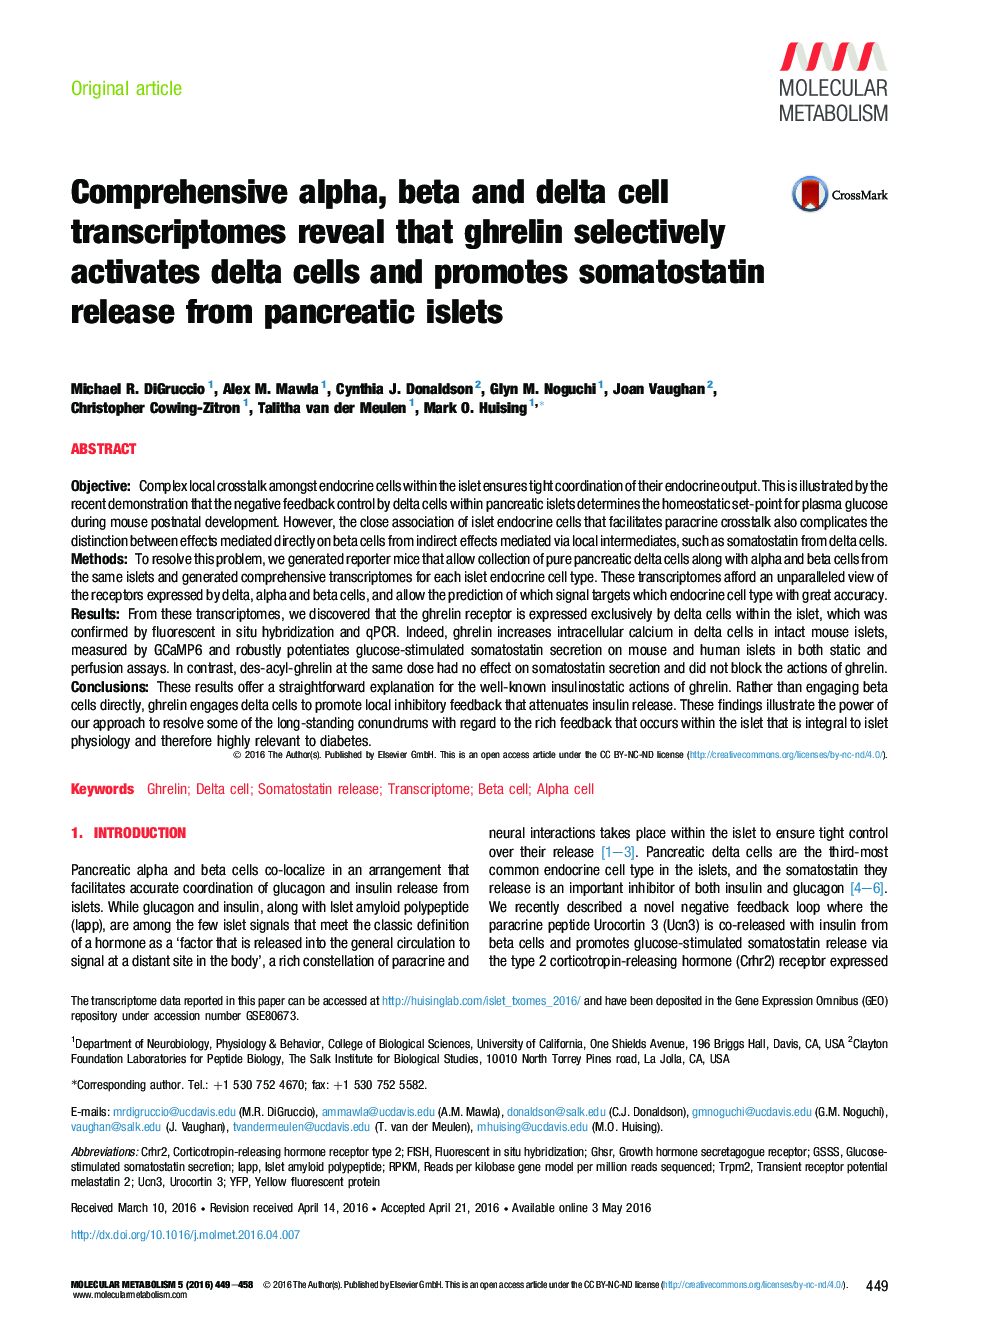 ترانسکتومومهای سلولی آلفا، بتا و دلتا نشان می دهد که گرلین به طور انتخابی سلول های دلتا را فعال می کند و آزاد سازی سموتوستاتین را از جزایر پانکراس